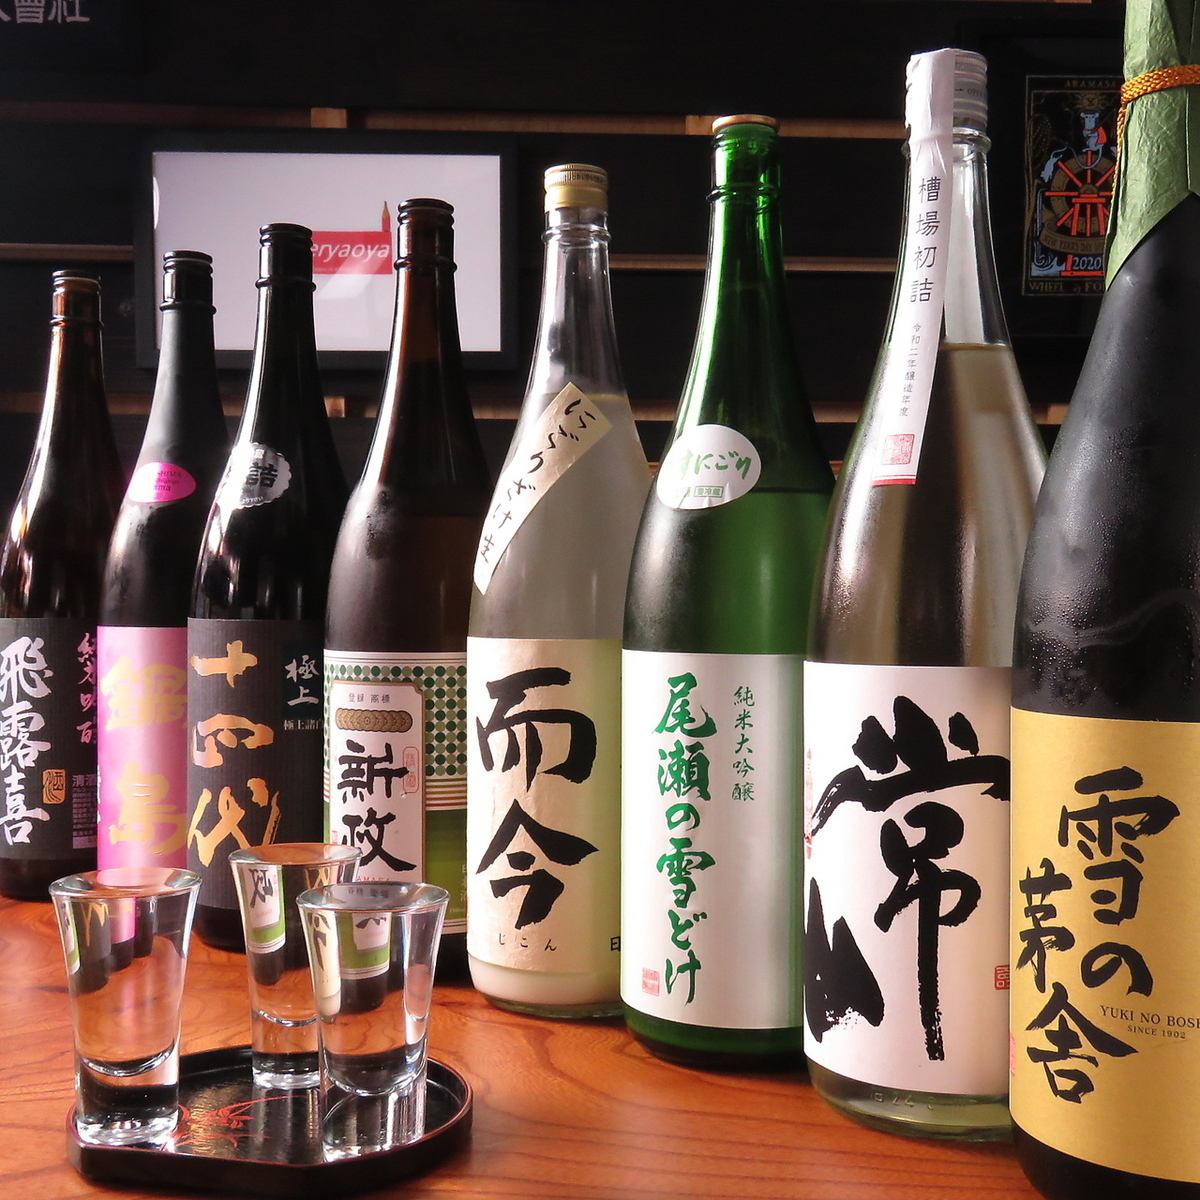 从全国各地订购的各种日本清酒♪对于日本清酒爱好者来说，这是不可抗拒的阵容★